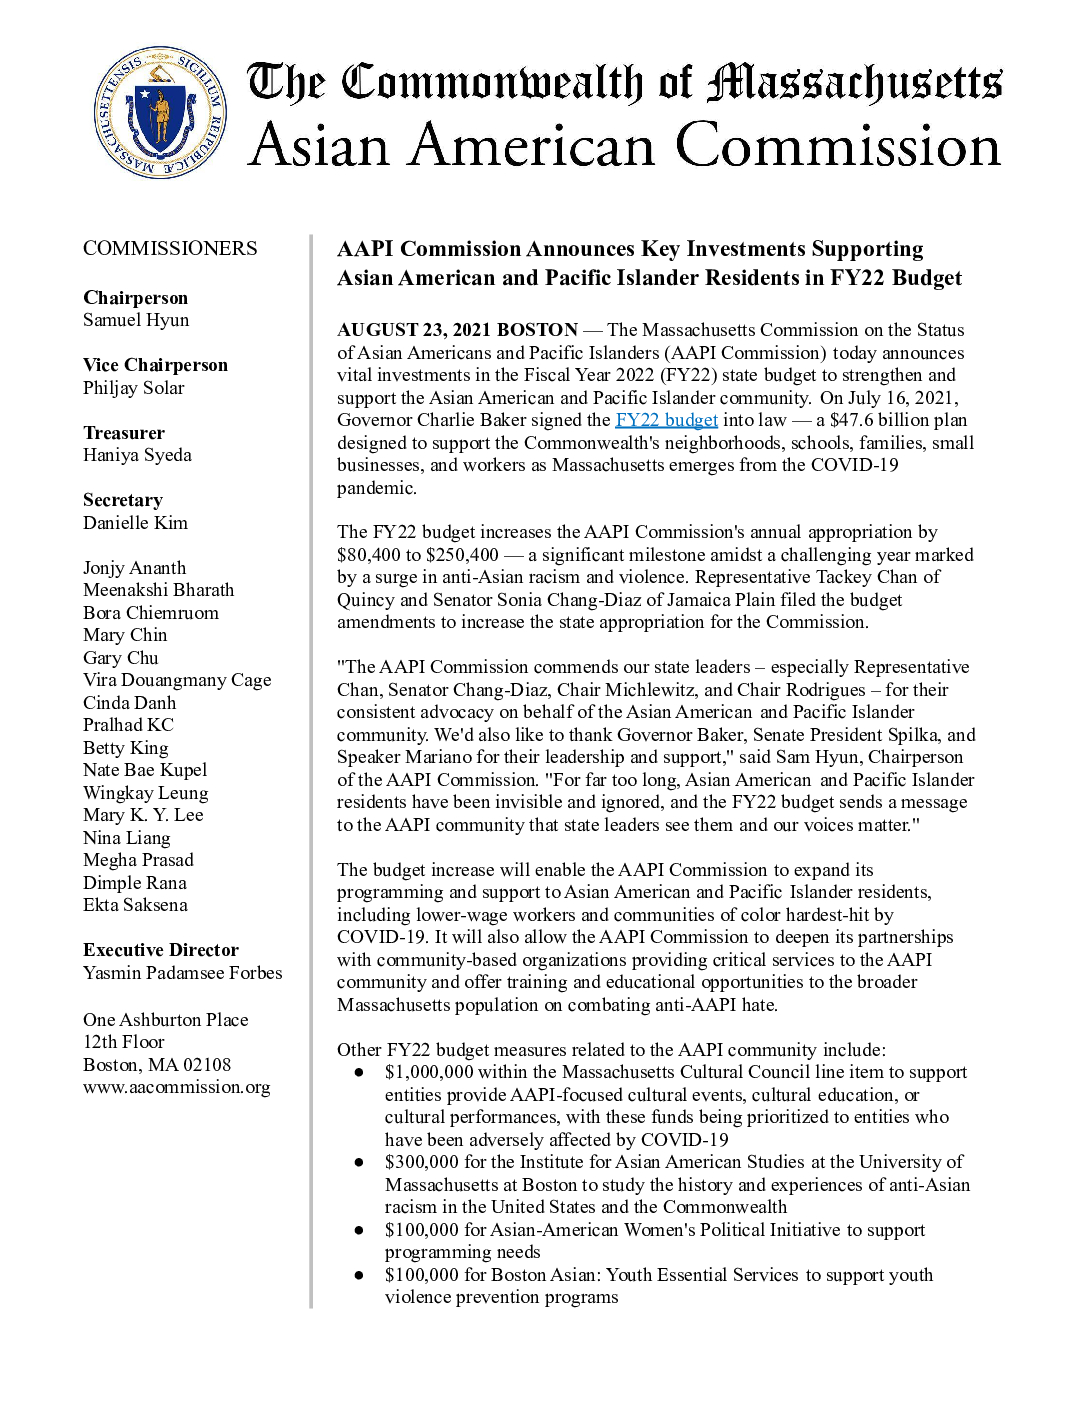 新聞稿：AAPI委員會宣佈在22財年預算中支持亞裔美國人和太平洋島民居民的主要投資